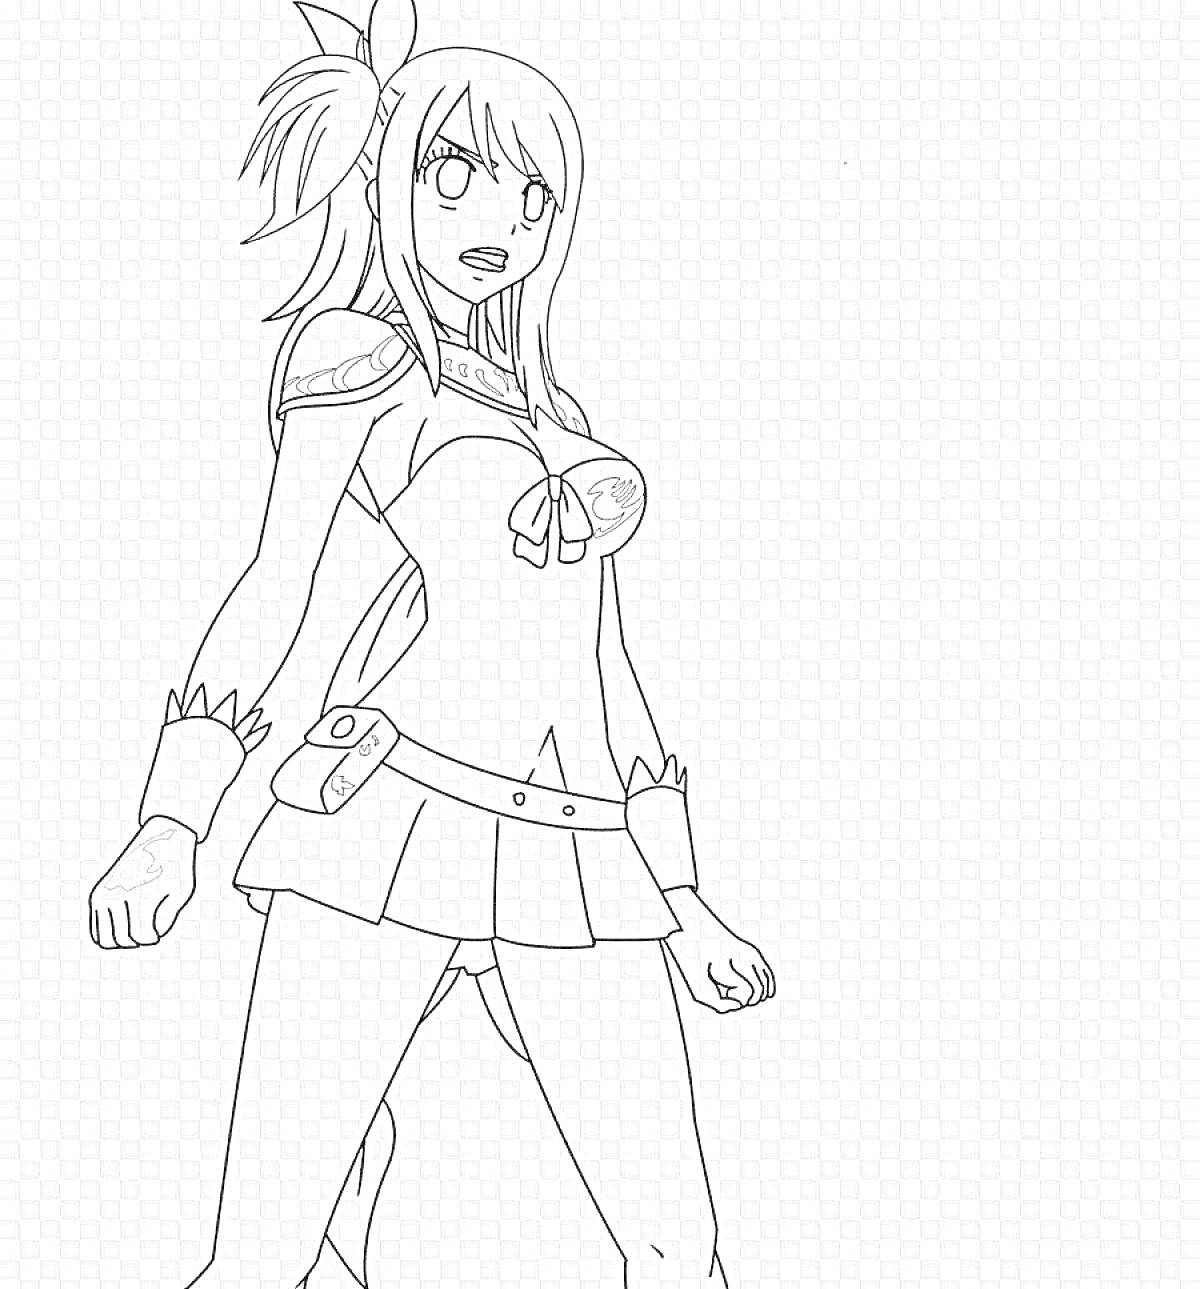 Раскраска Девушка в аниме-стиле в полуоборотовой стойке, с хвостиком, в костюме с бантом на груди и поясом с сумкой на бедре